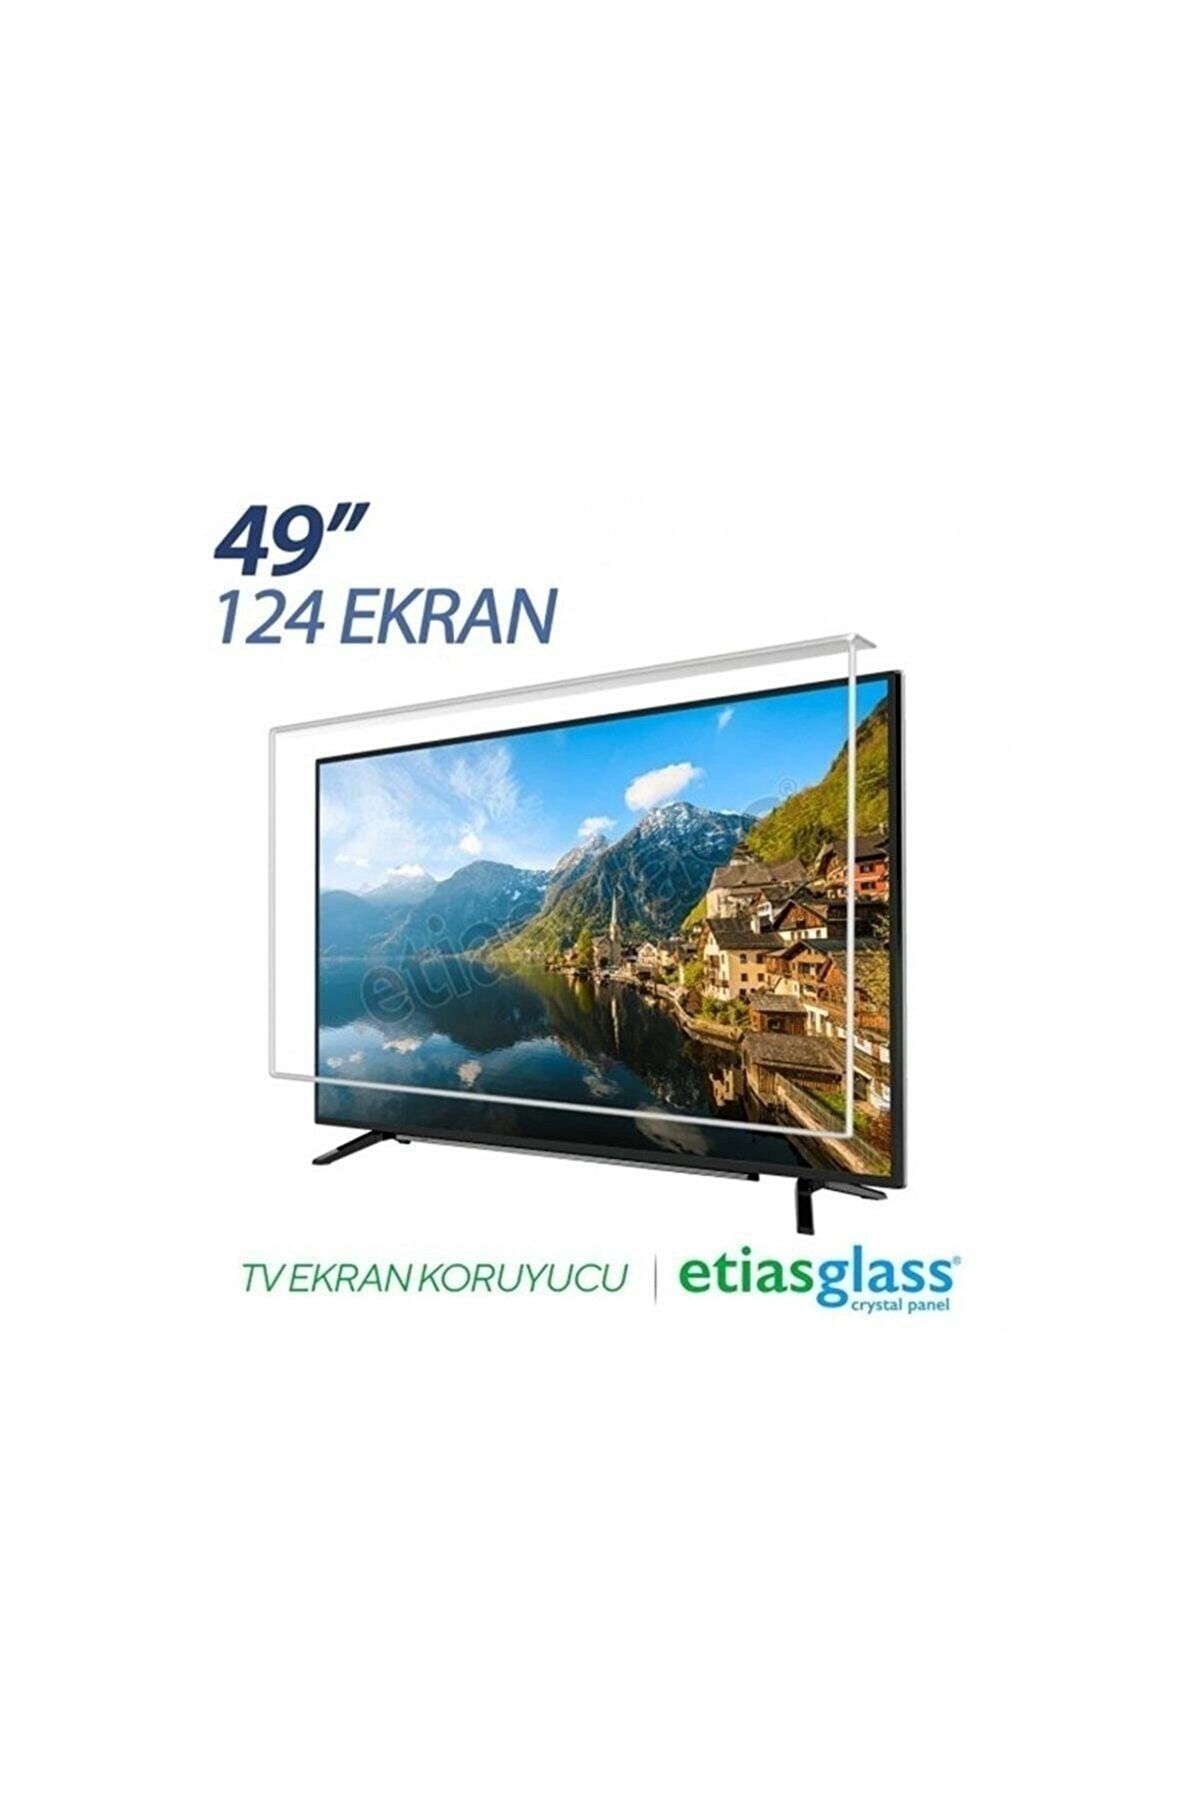 Etiasglass 49 Inch 124 Ekran Led Tv Ekran Koruyucu / Ekran Koruma Paneli